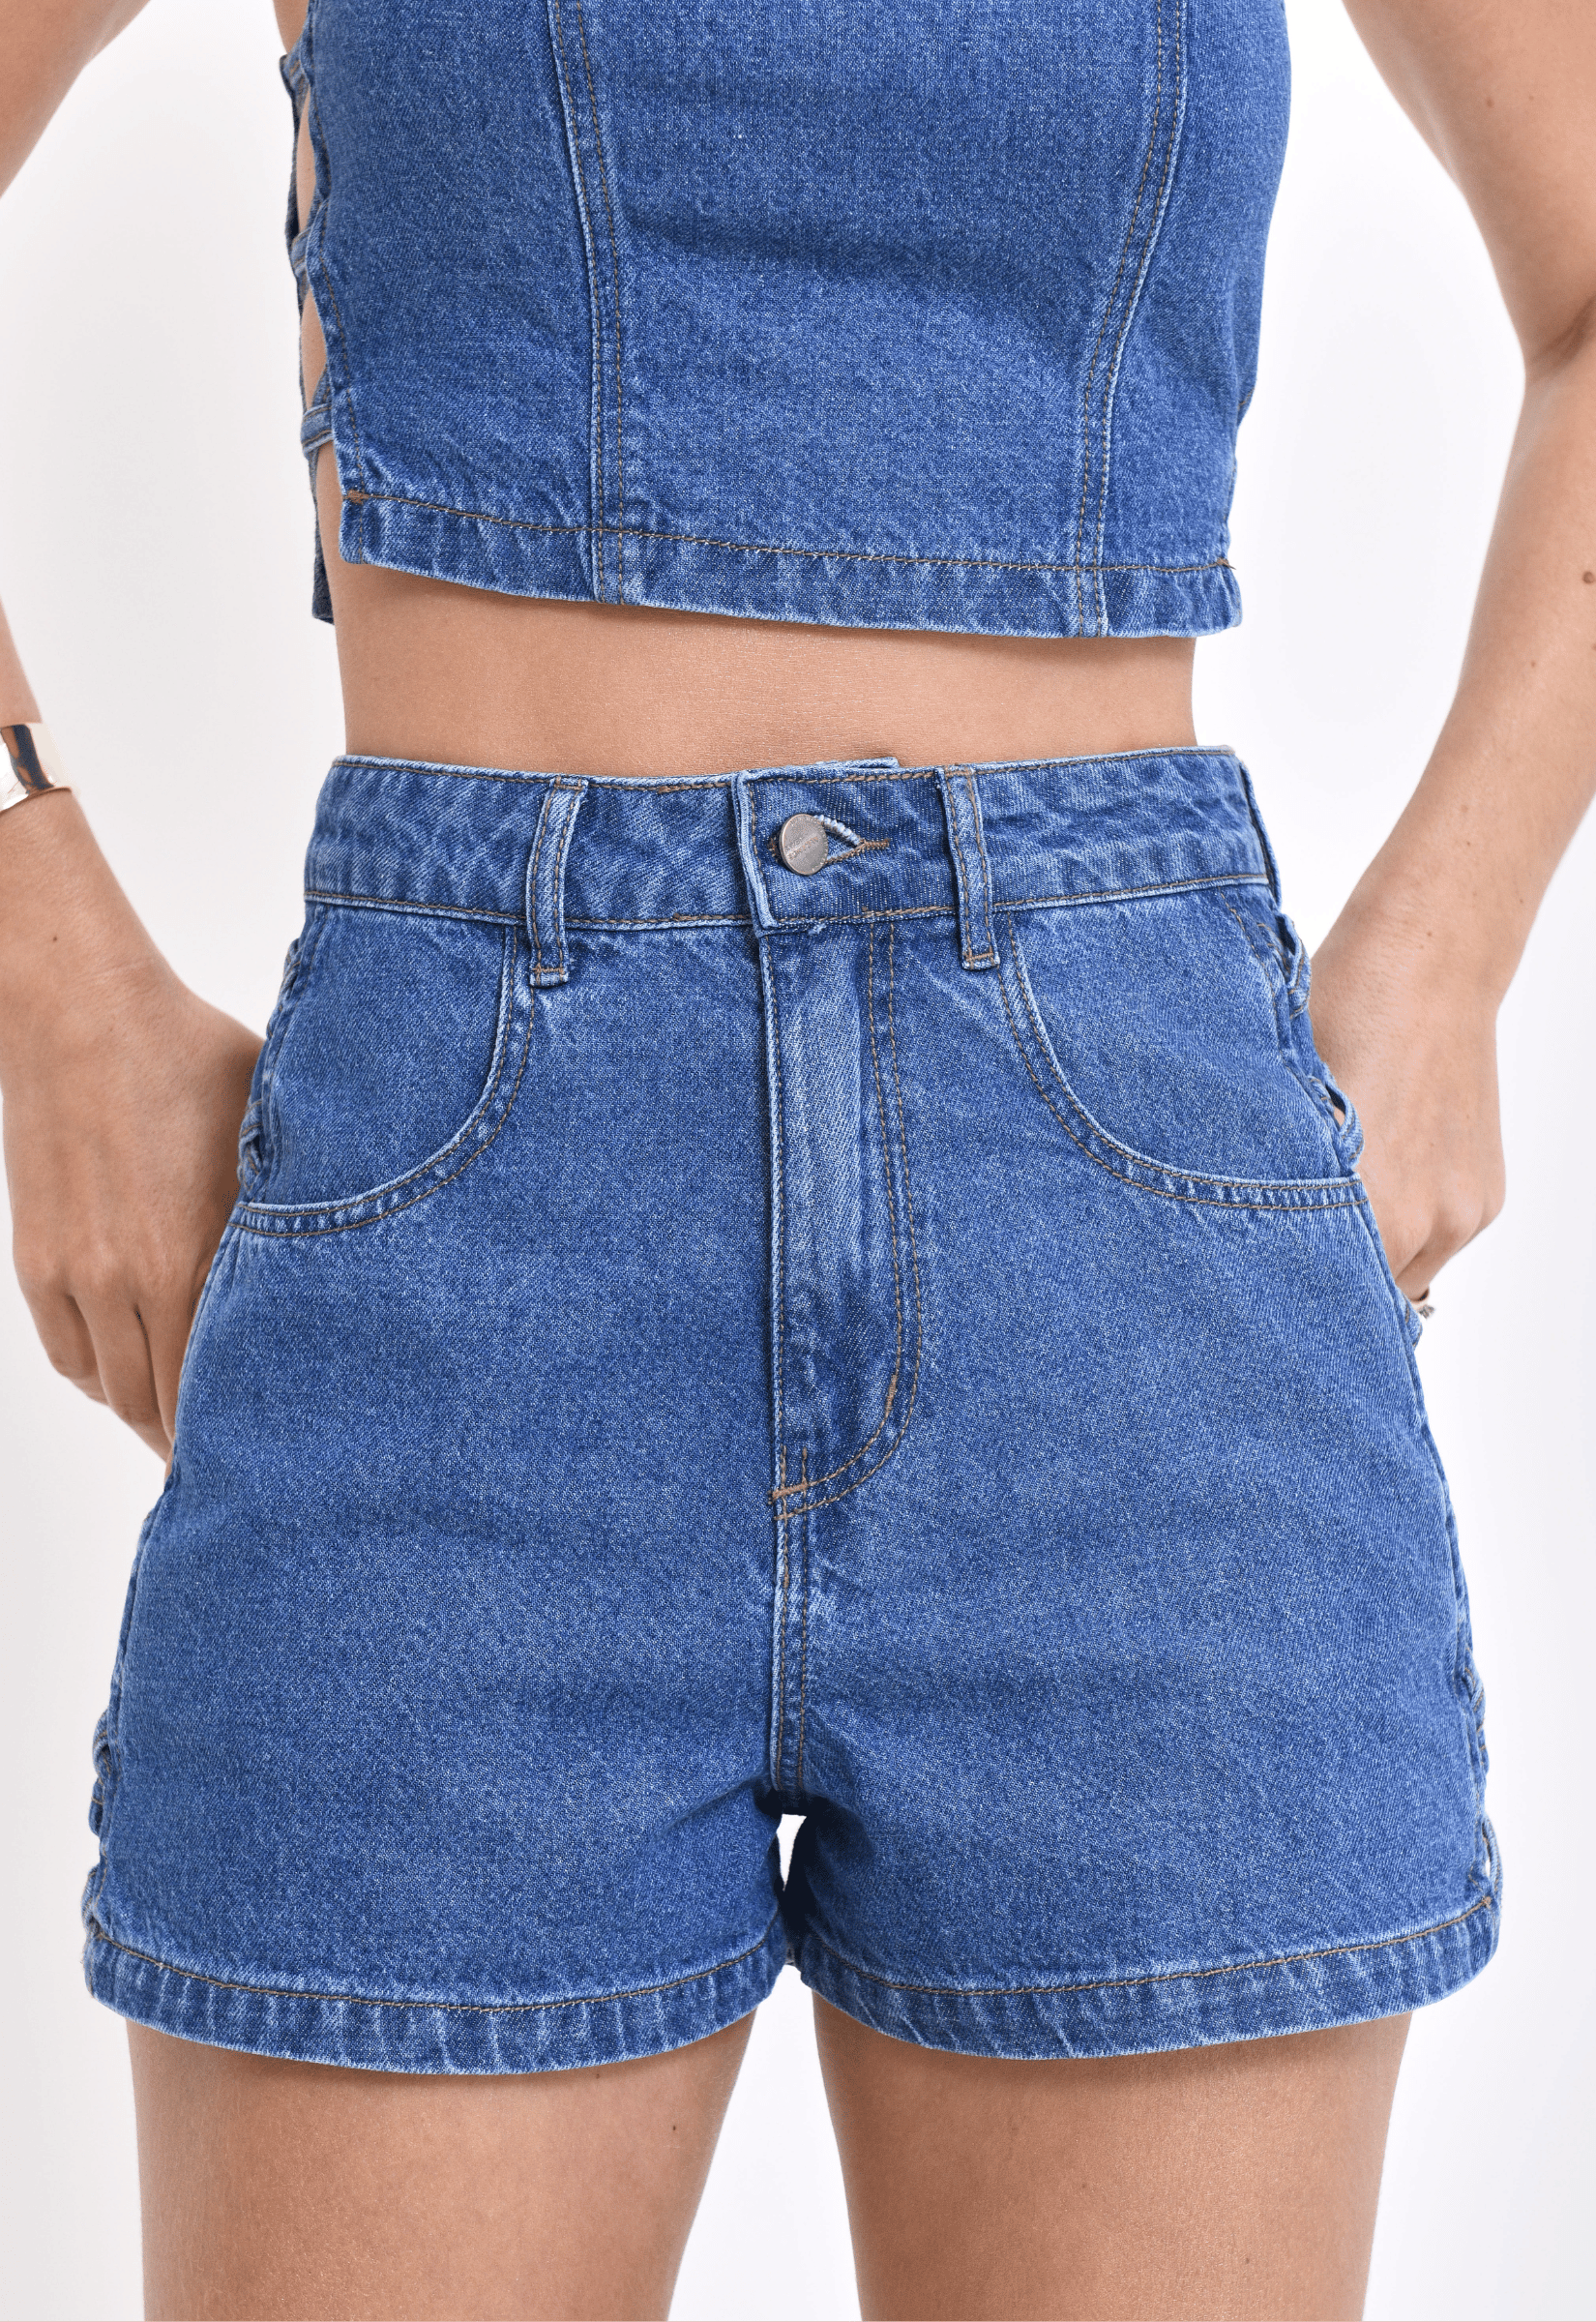 Short Jeans Alto Aba Botões Médio Alcance